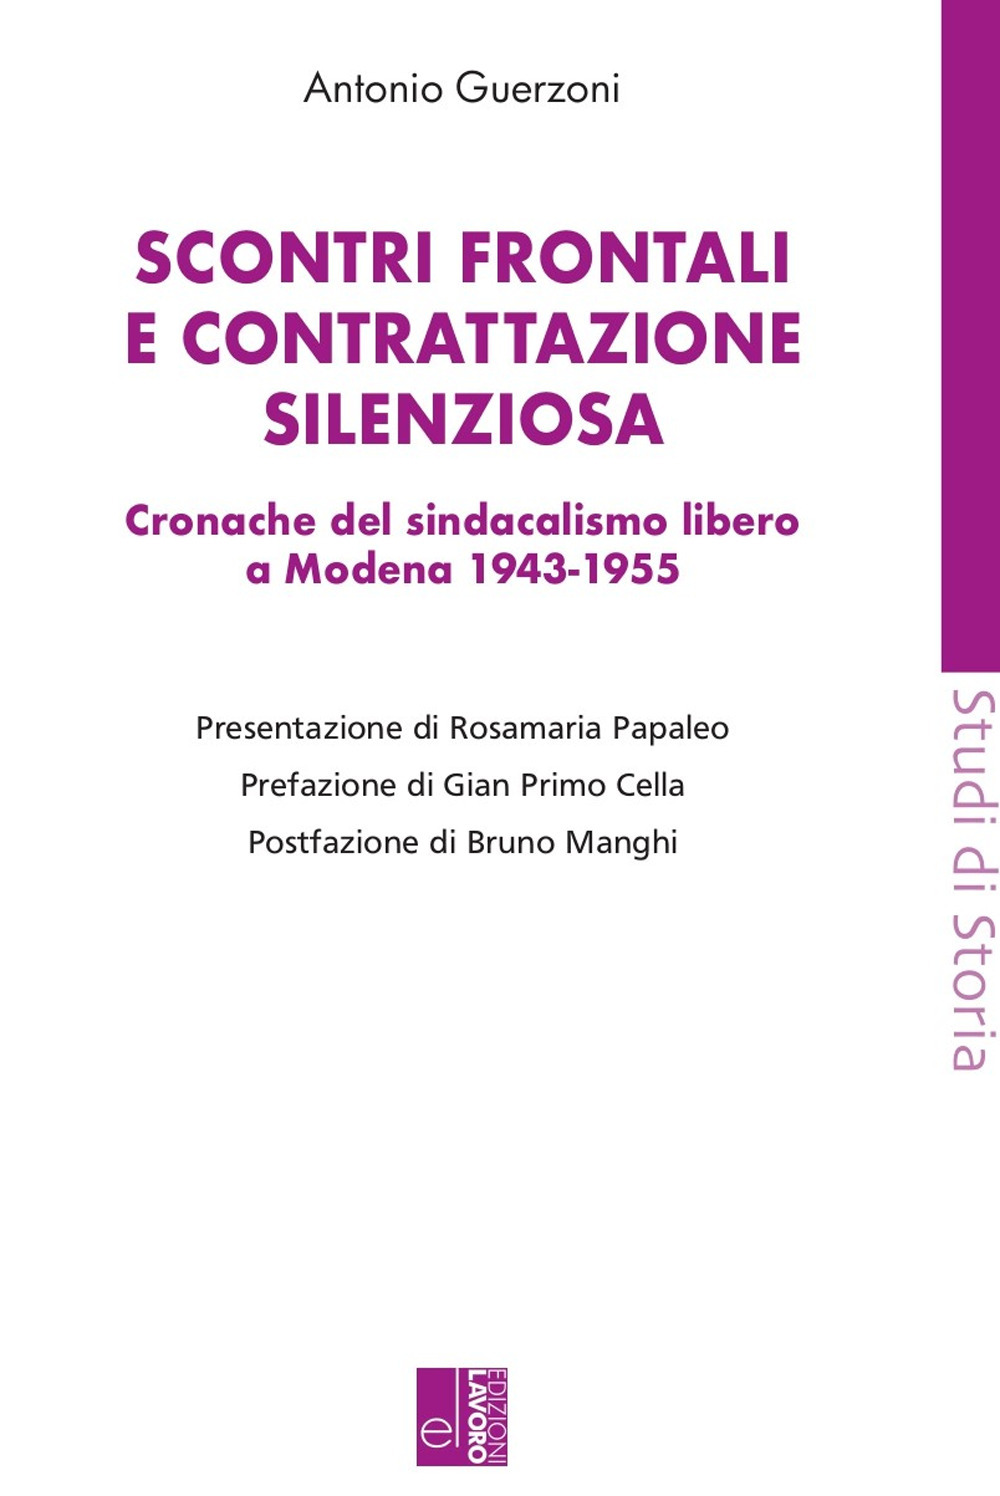 Scontri frontali e contrattazione silenziosa. Cronache del sindacalismo libero a Modena (1943-1955)